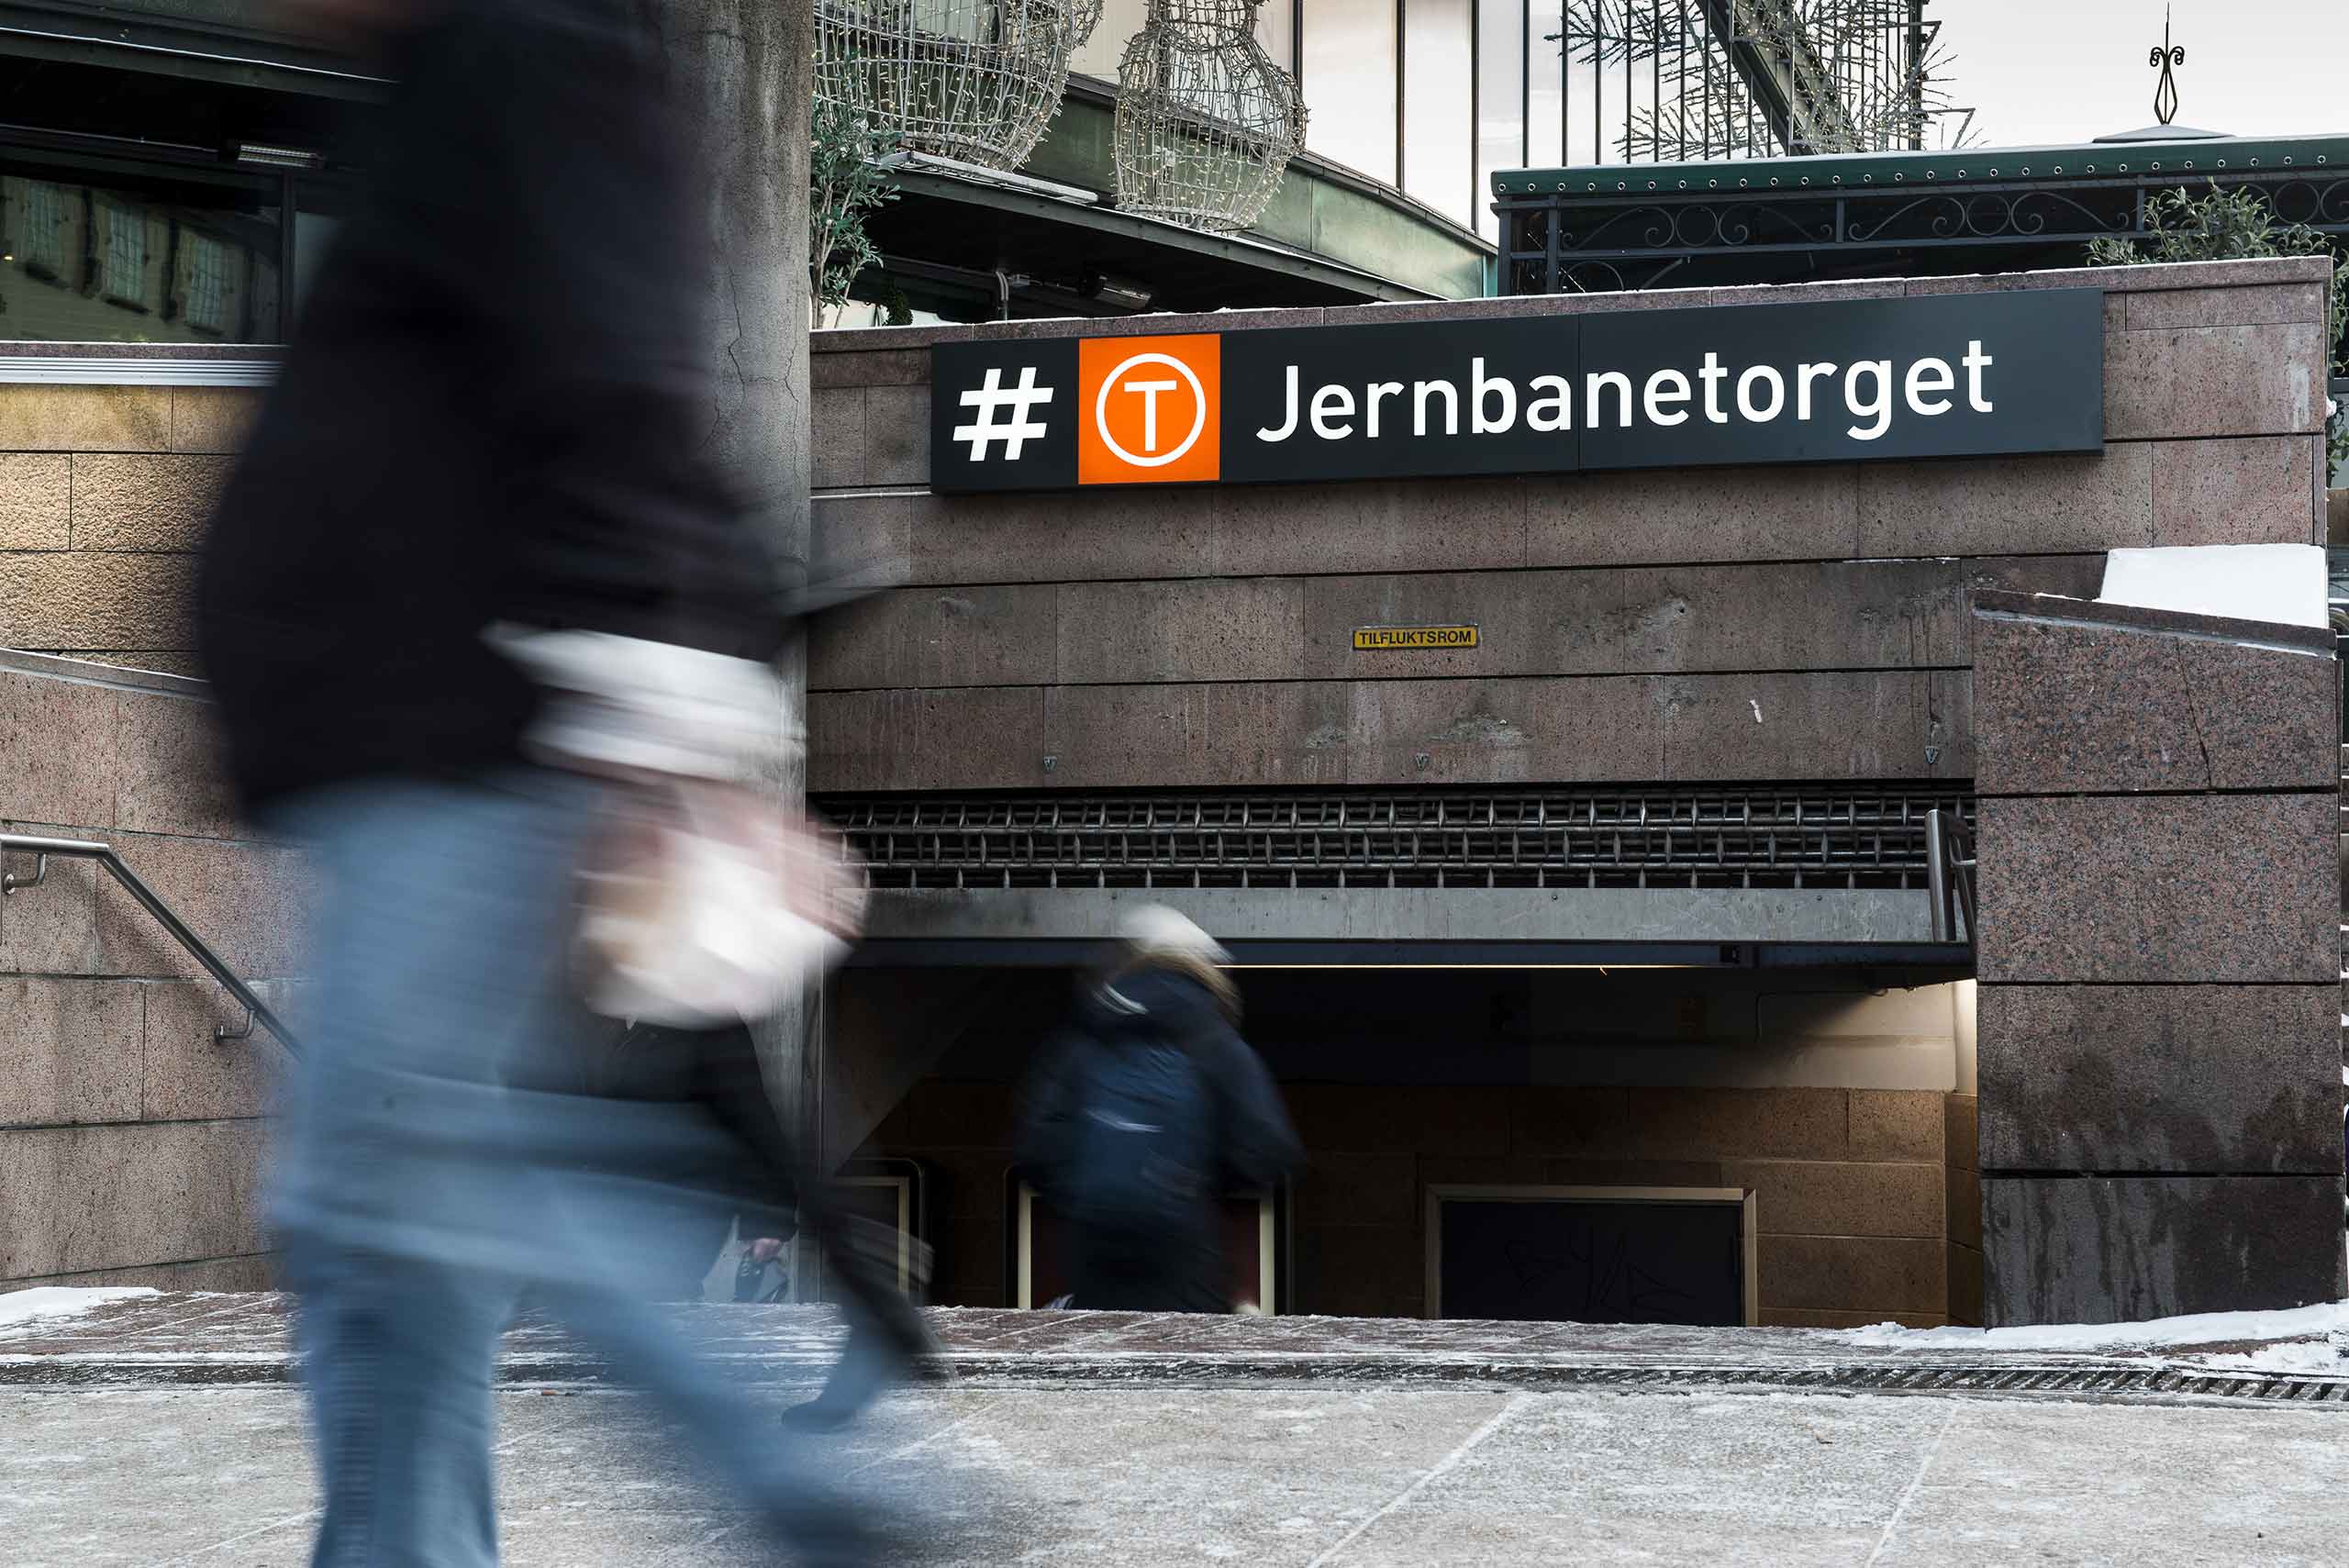 Bilde av Jernbanetorget stasjon.